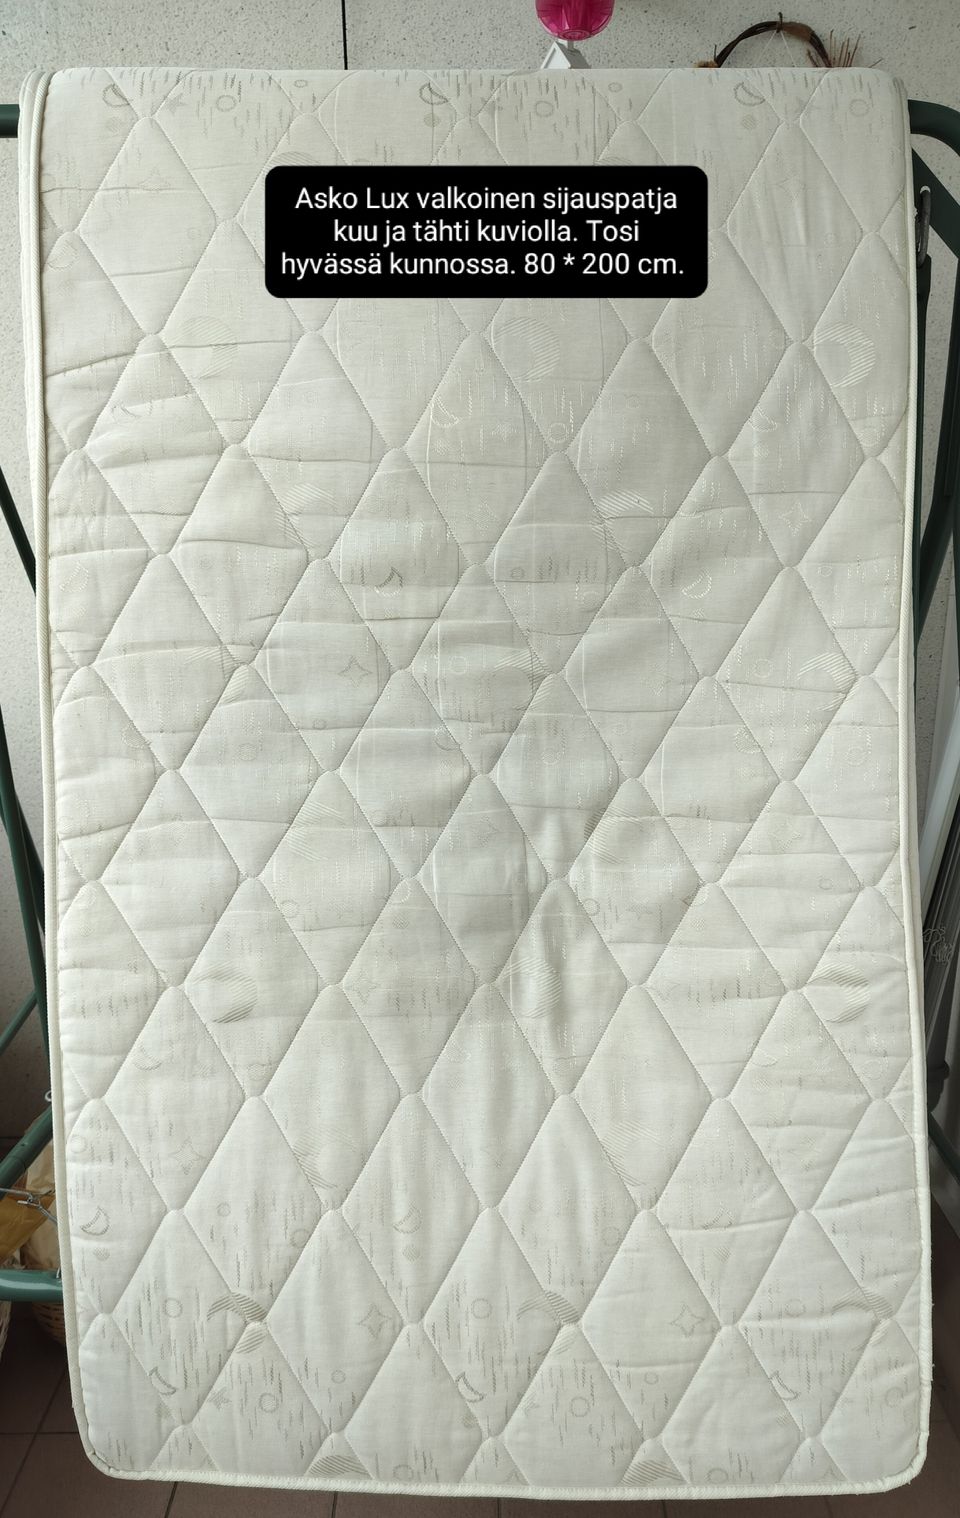 Asko Lux valkoinen sijauspatja 80 cm